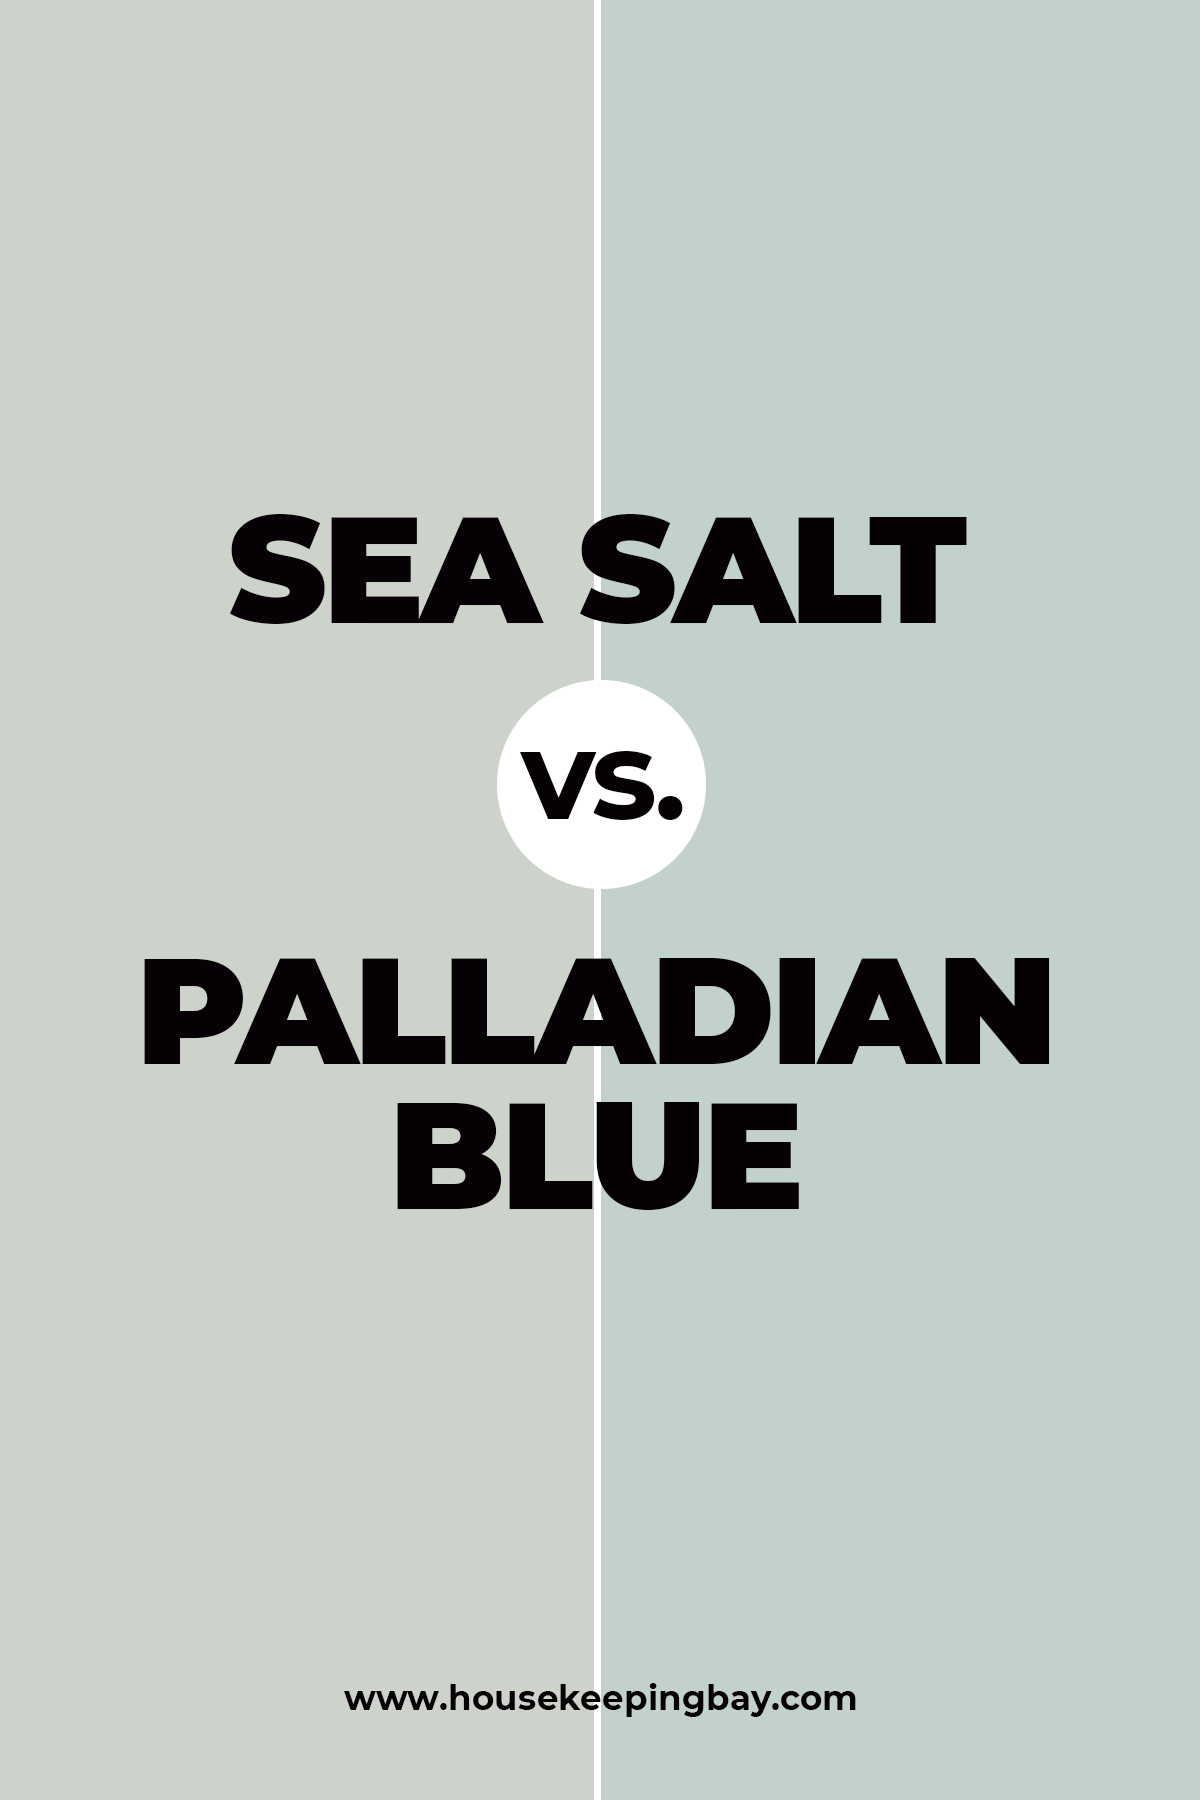 Sea Salt vs. Palladian Blue